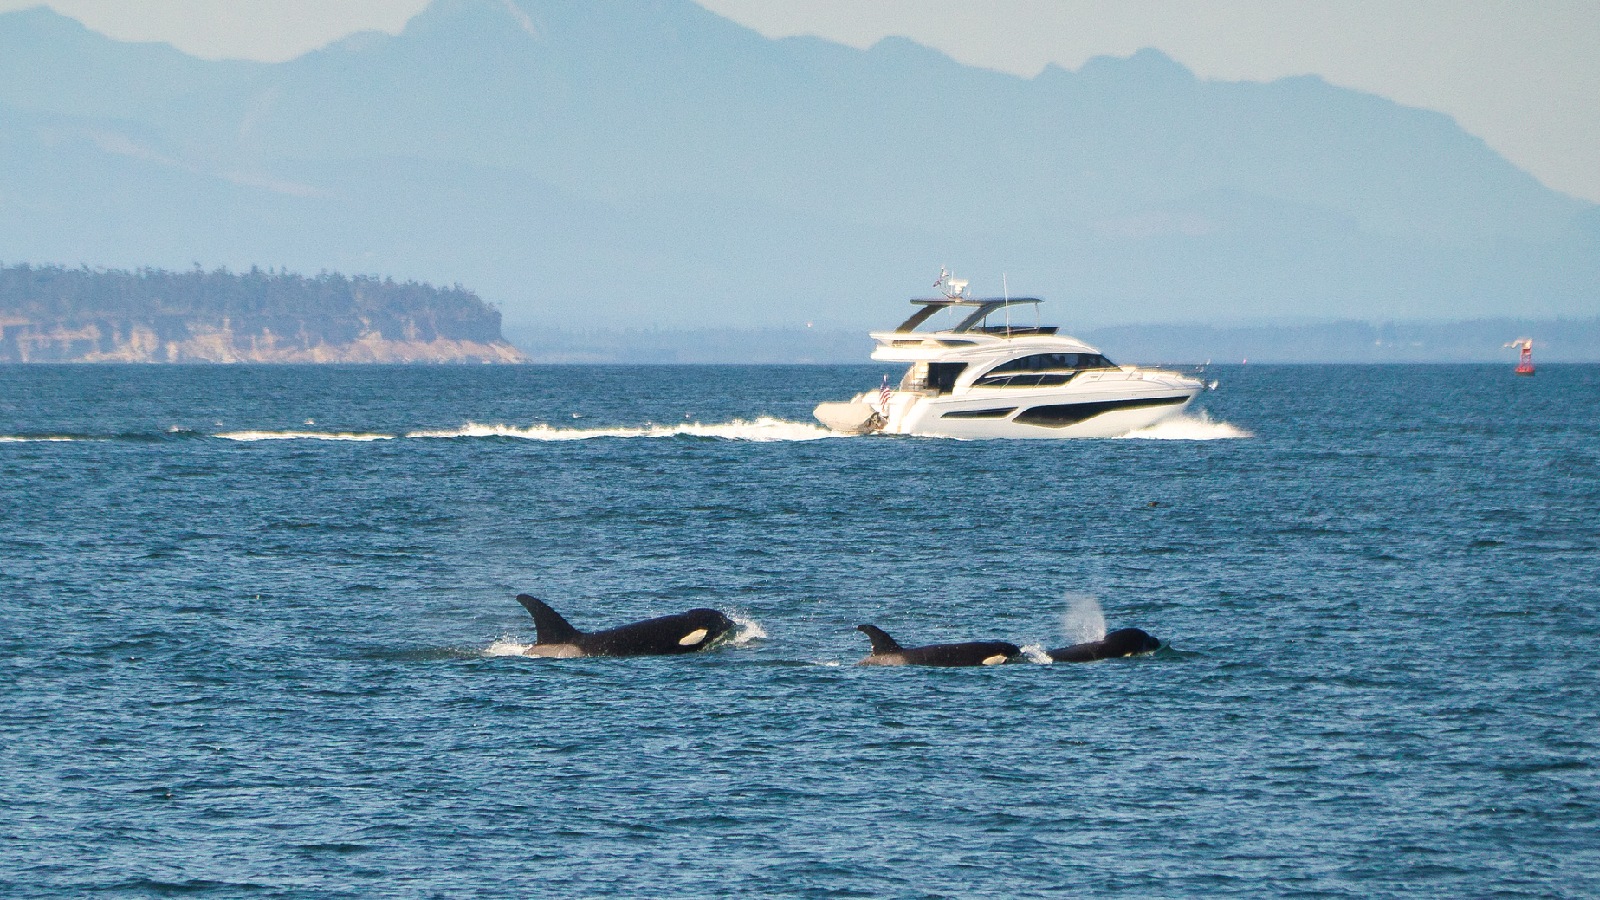 Le famigerate orche che affondavano le barche furono avvistate a centinaia di miglia da dove dovrebbero essere, sconcertando gli scienziati